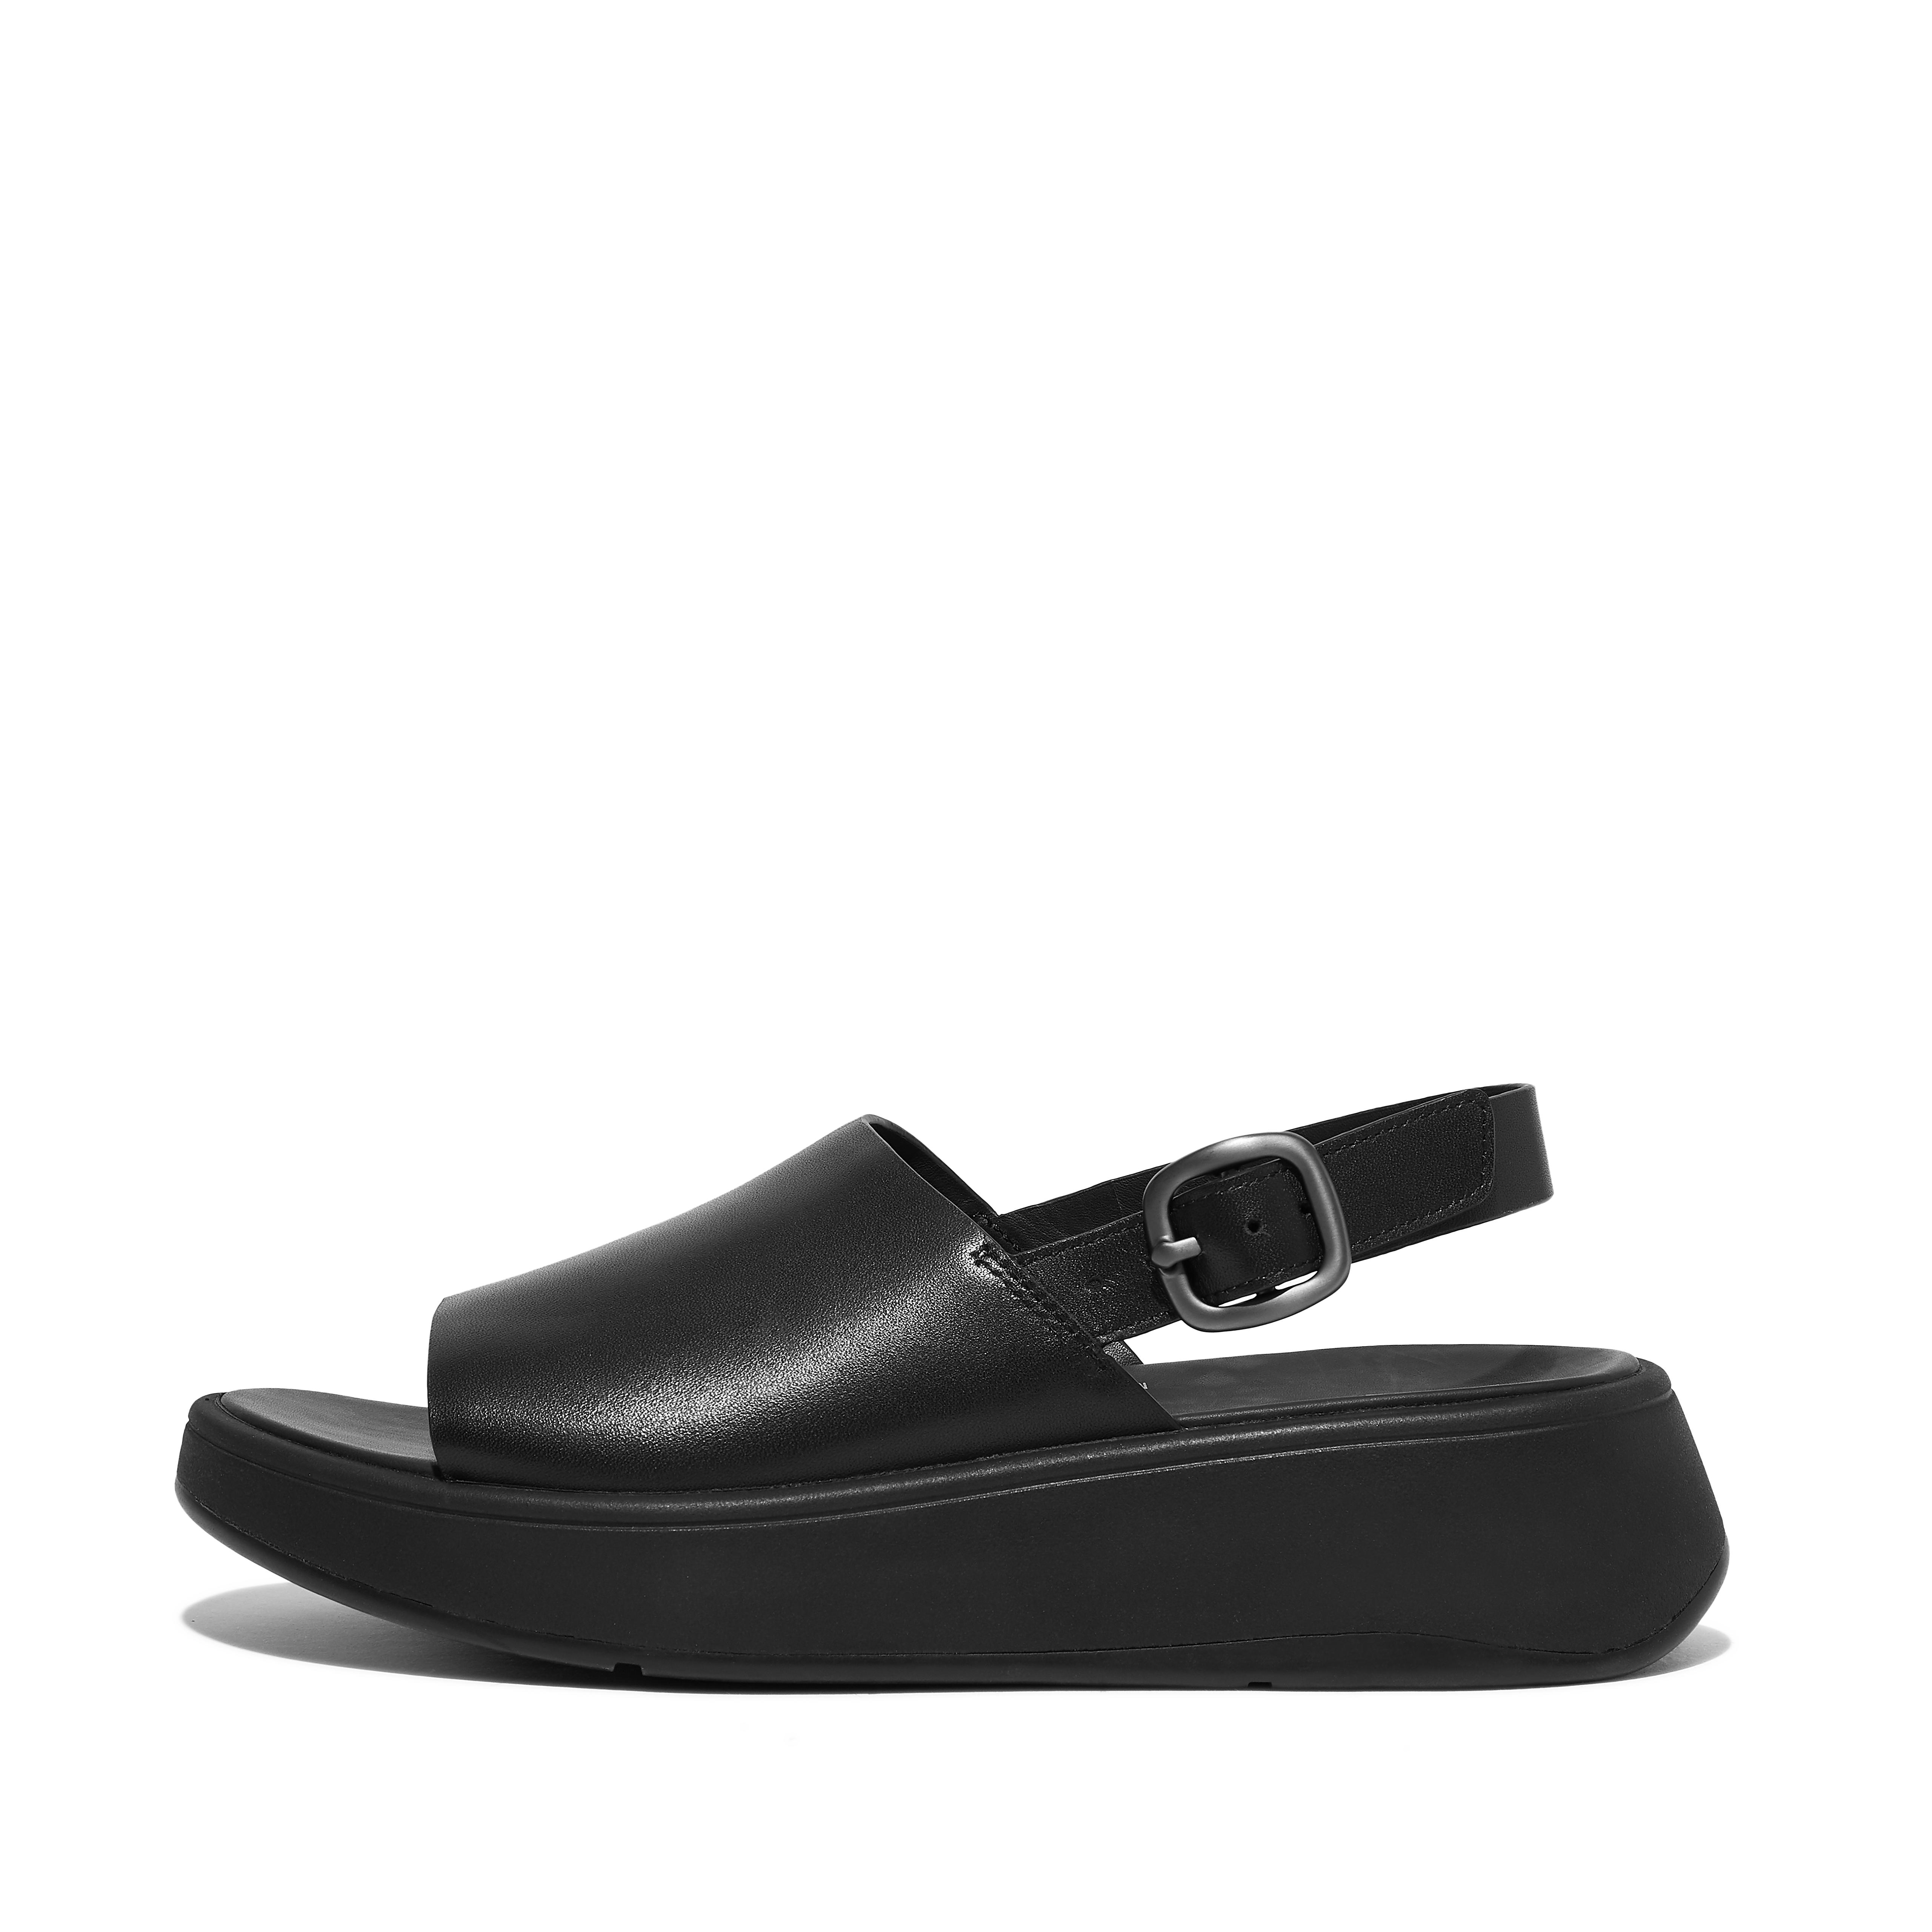 Fitflop Leather Flatform Back-Strap Sandals